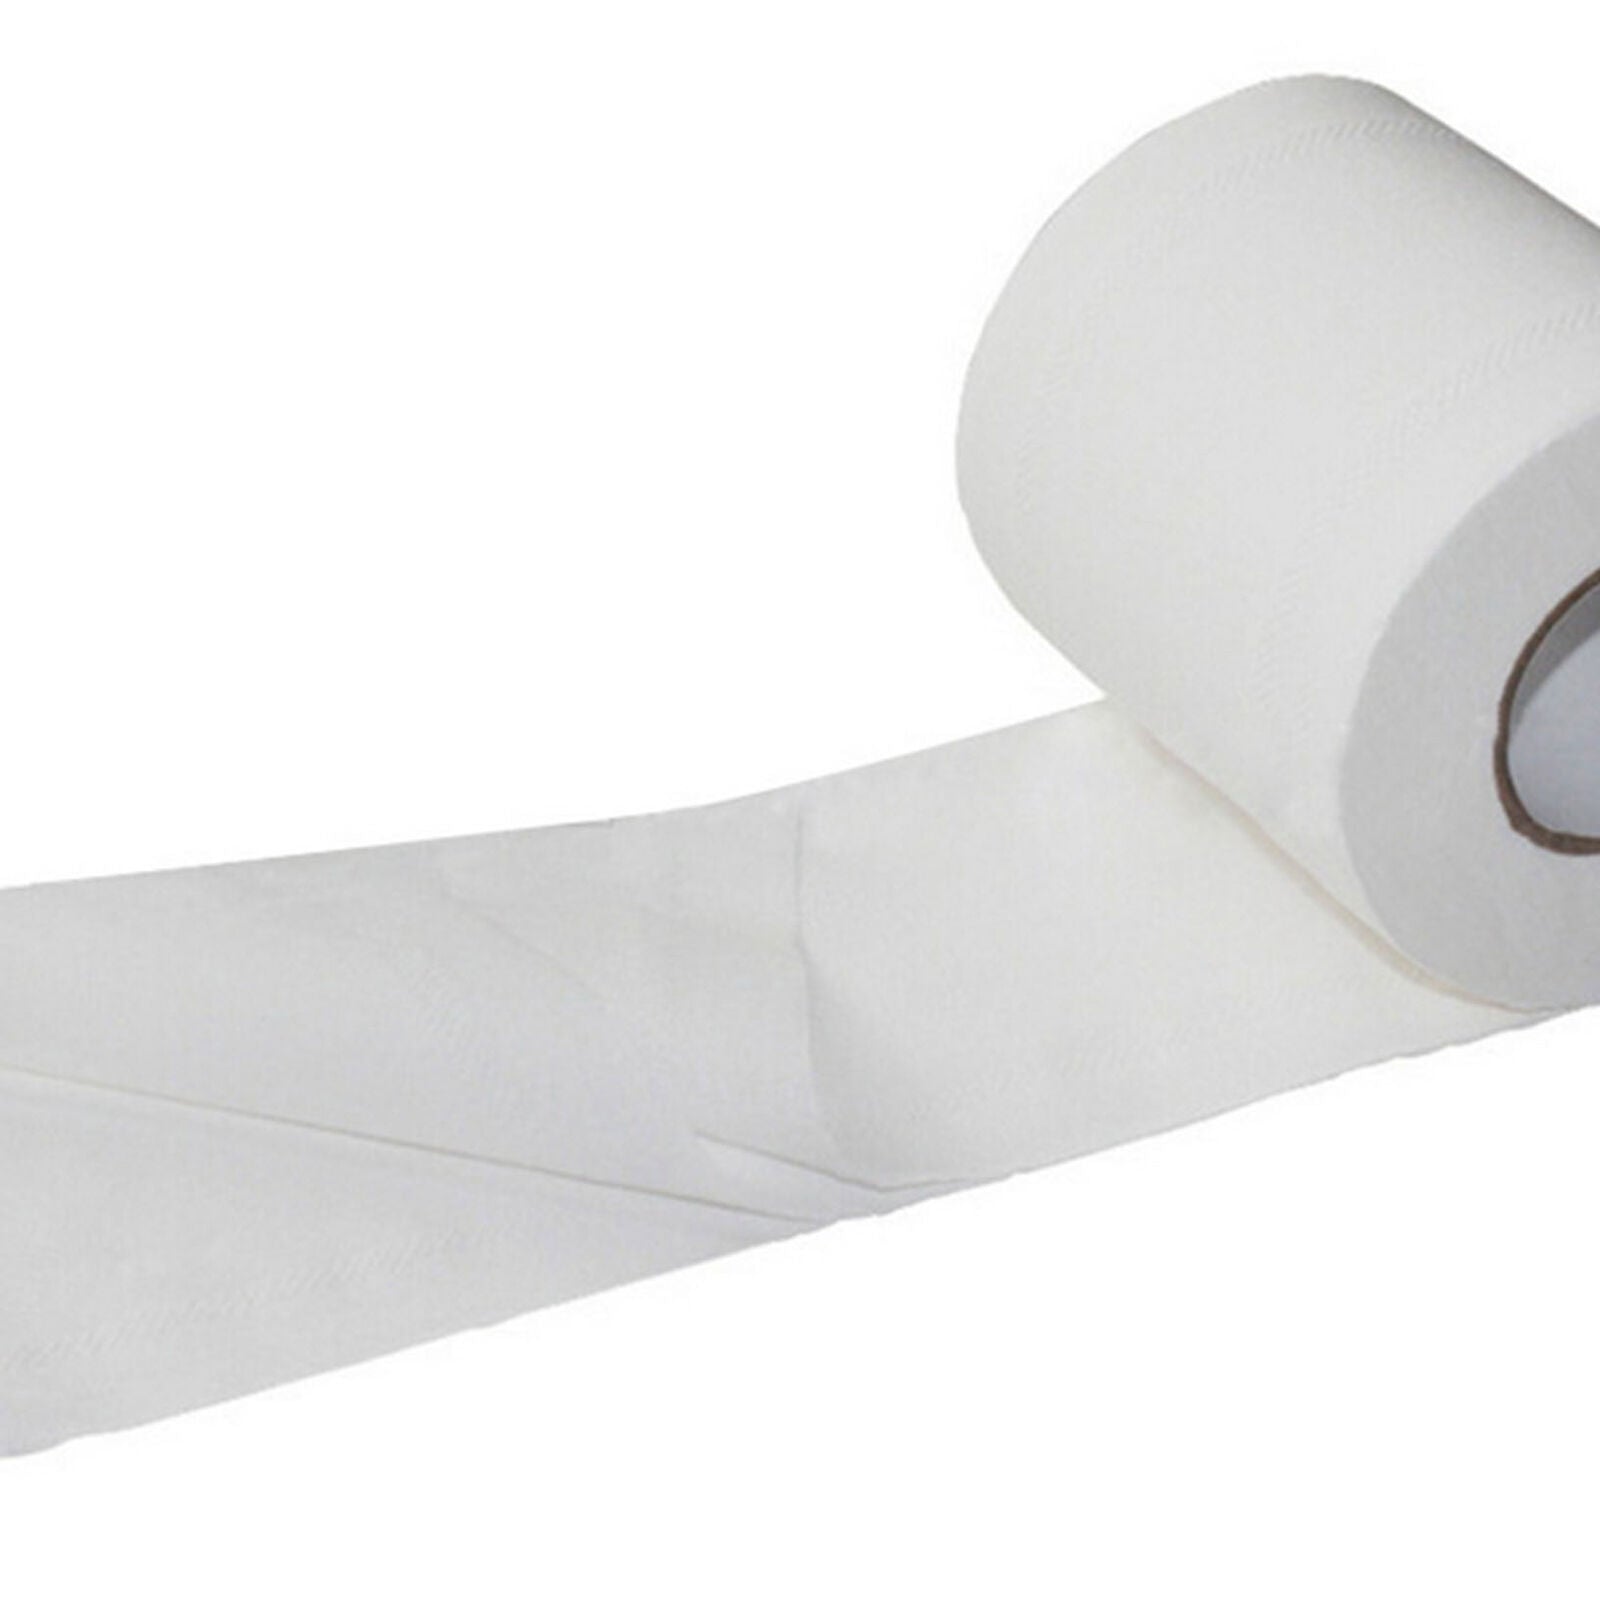 Household 10 Rolls Paper Bulk Rolls Bath Tissue Bathroom White Soft 3 Ply